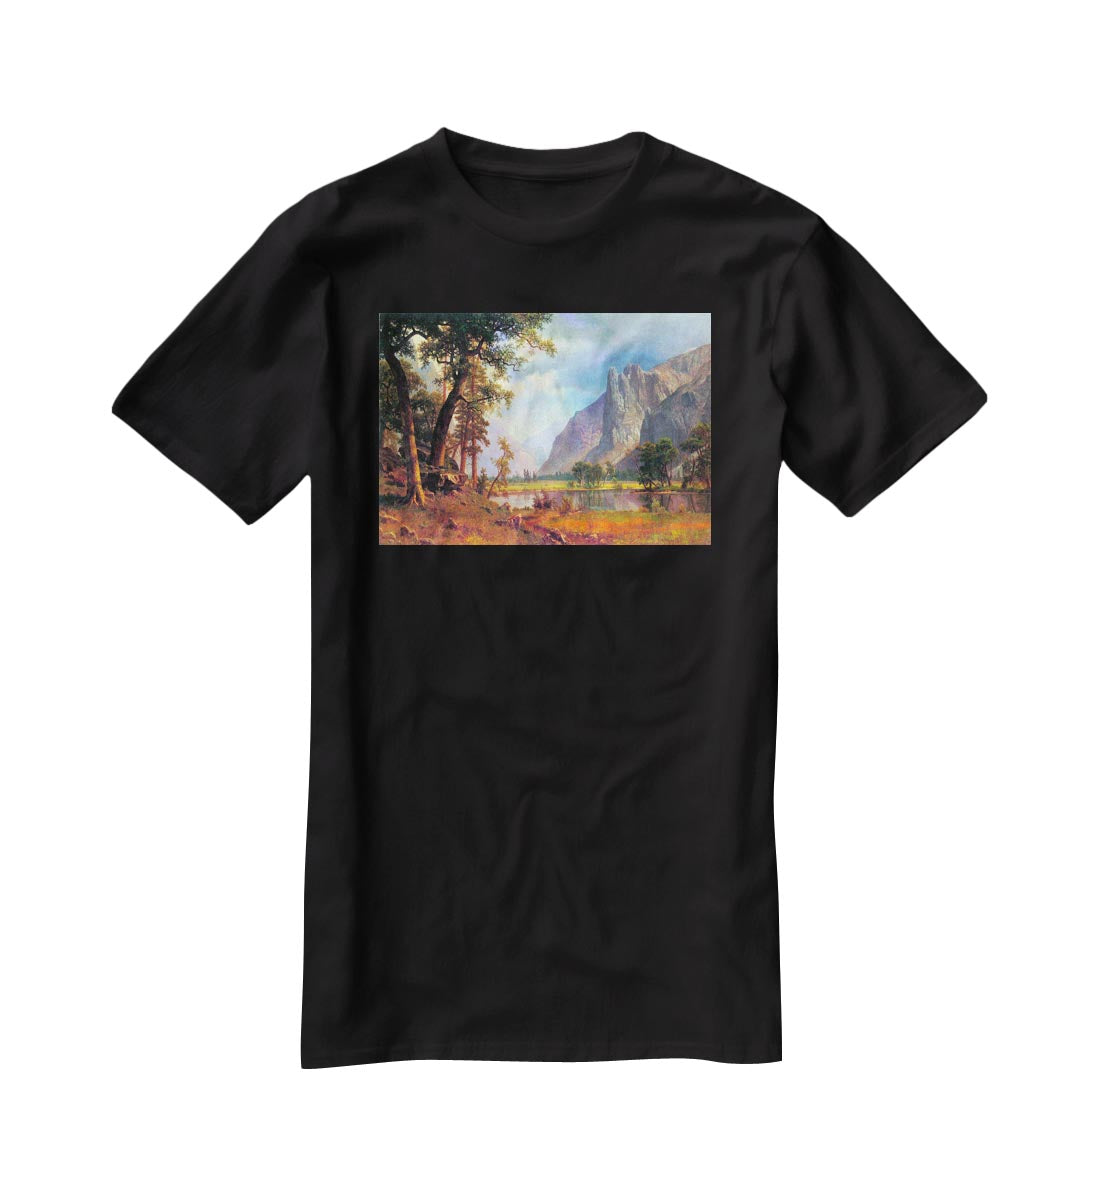 Yosemite Valley 2 by Bierstadt T-Shirt - Canvas Art Rocks - 1